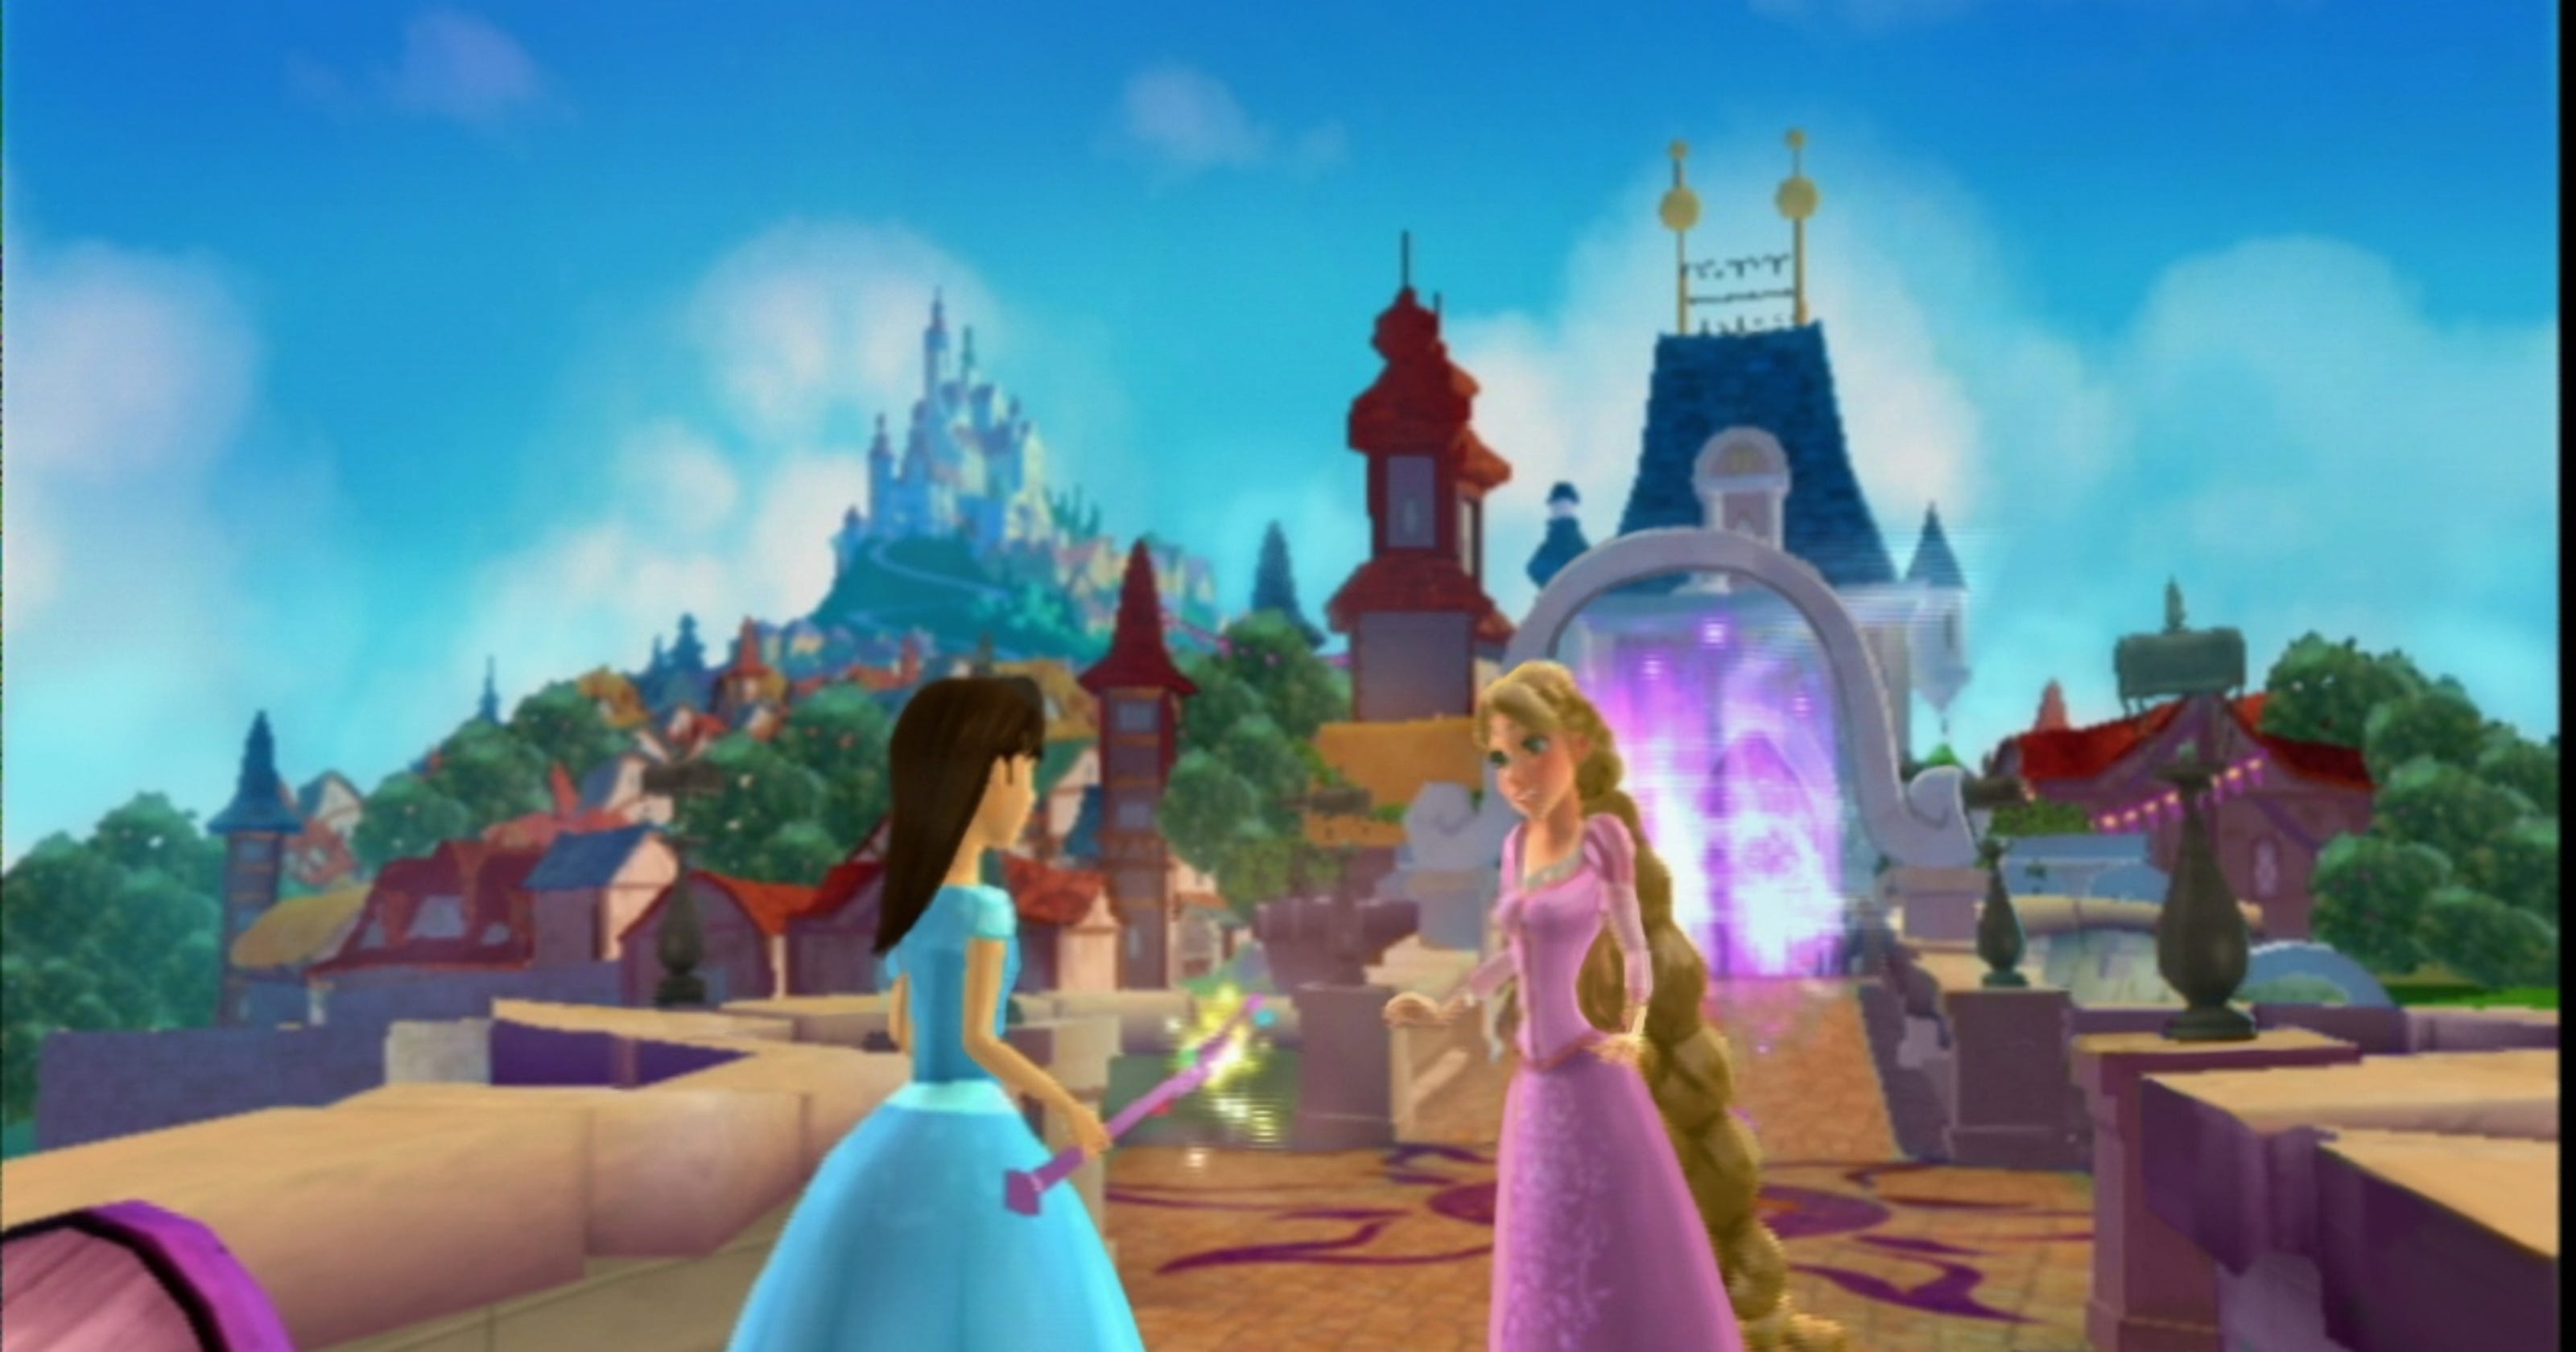 Игры принцесс много. Принцессы Зачарованный мир Рапунцель. Игра Disney Princess my Fairytale Adventure. My Fairytale Adventure принцессы Дисней. Принцессы Зачарованный мир 2.